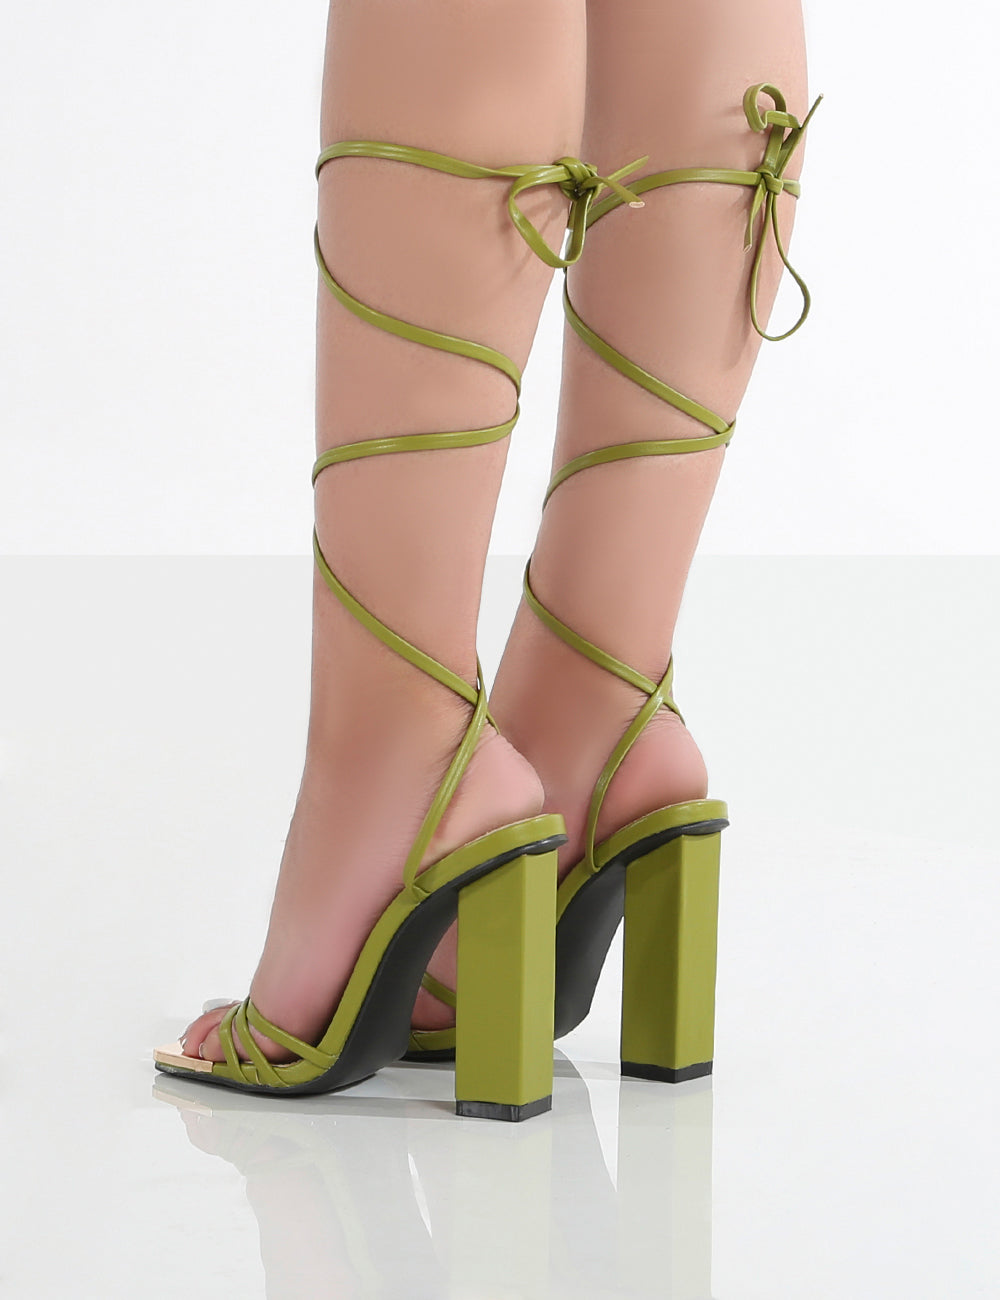 Olive Green Heels - Buy Olive Green Heels online in India